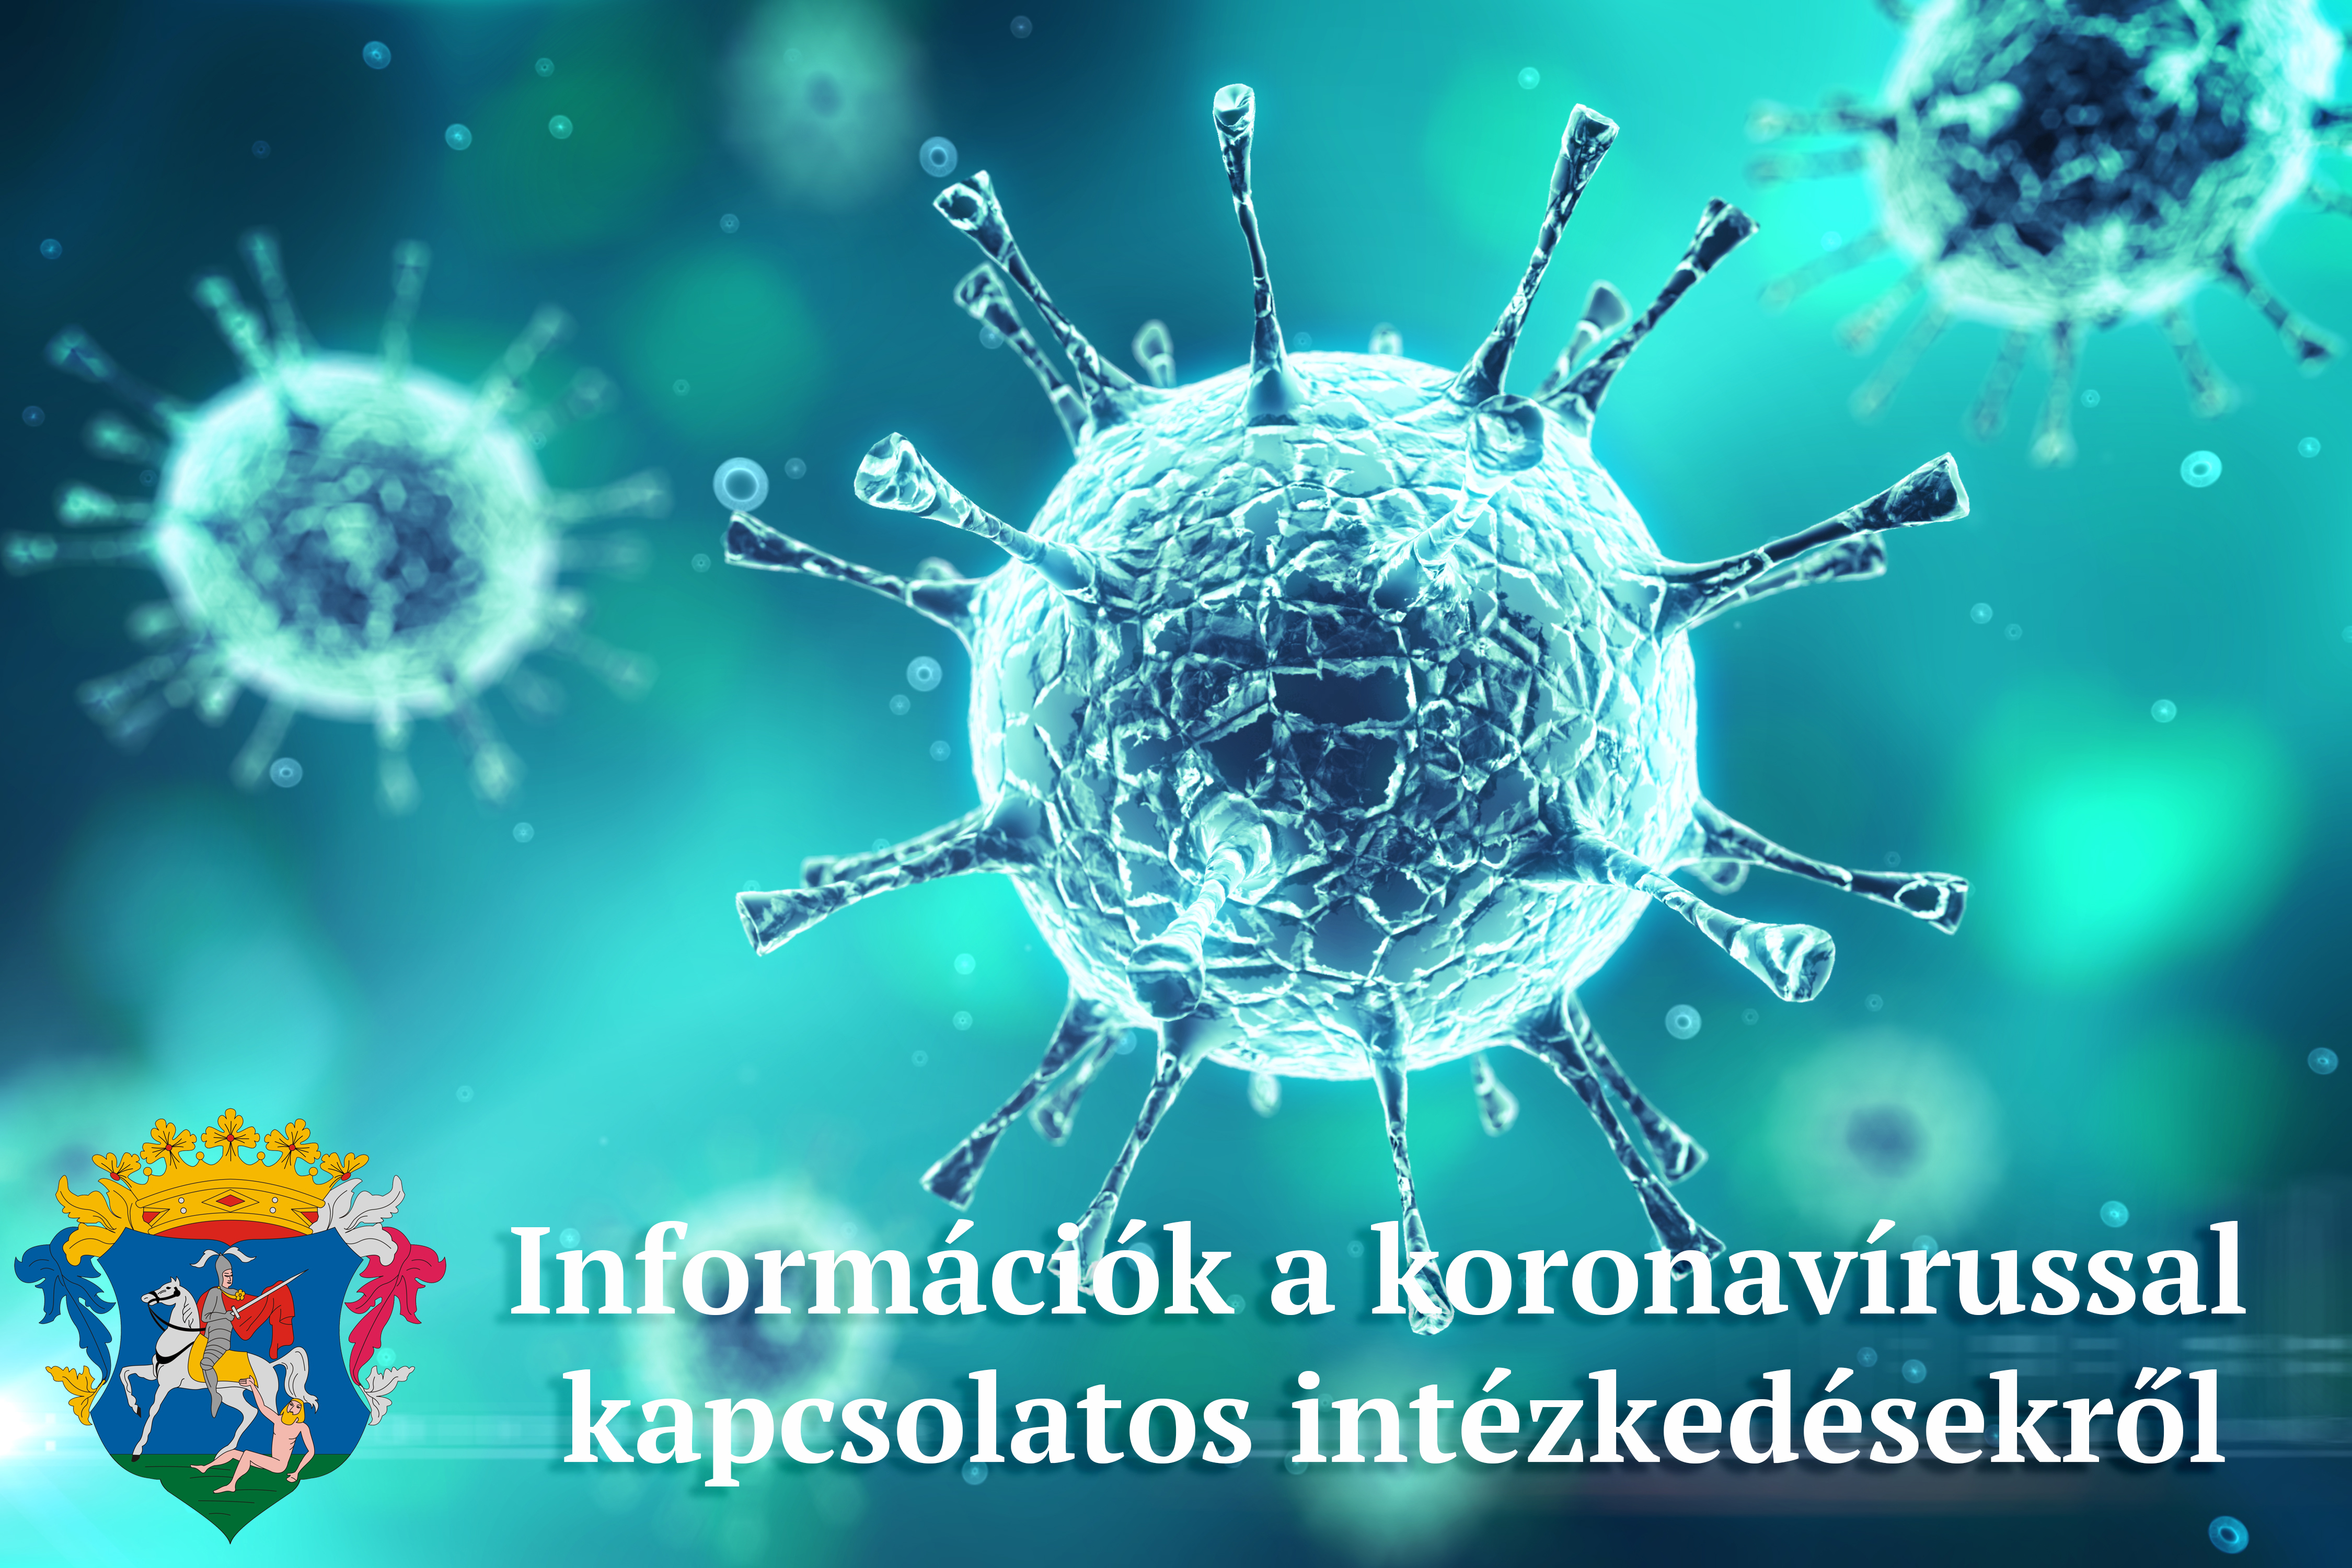 Koronavírussal kapcsolatos intézkedések, döntések 2021. május 25-28. között